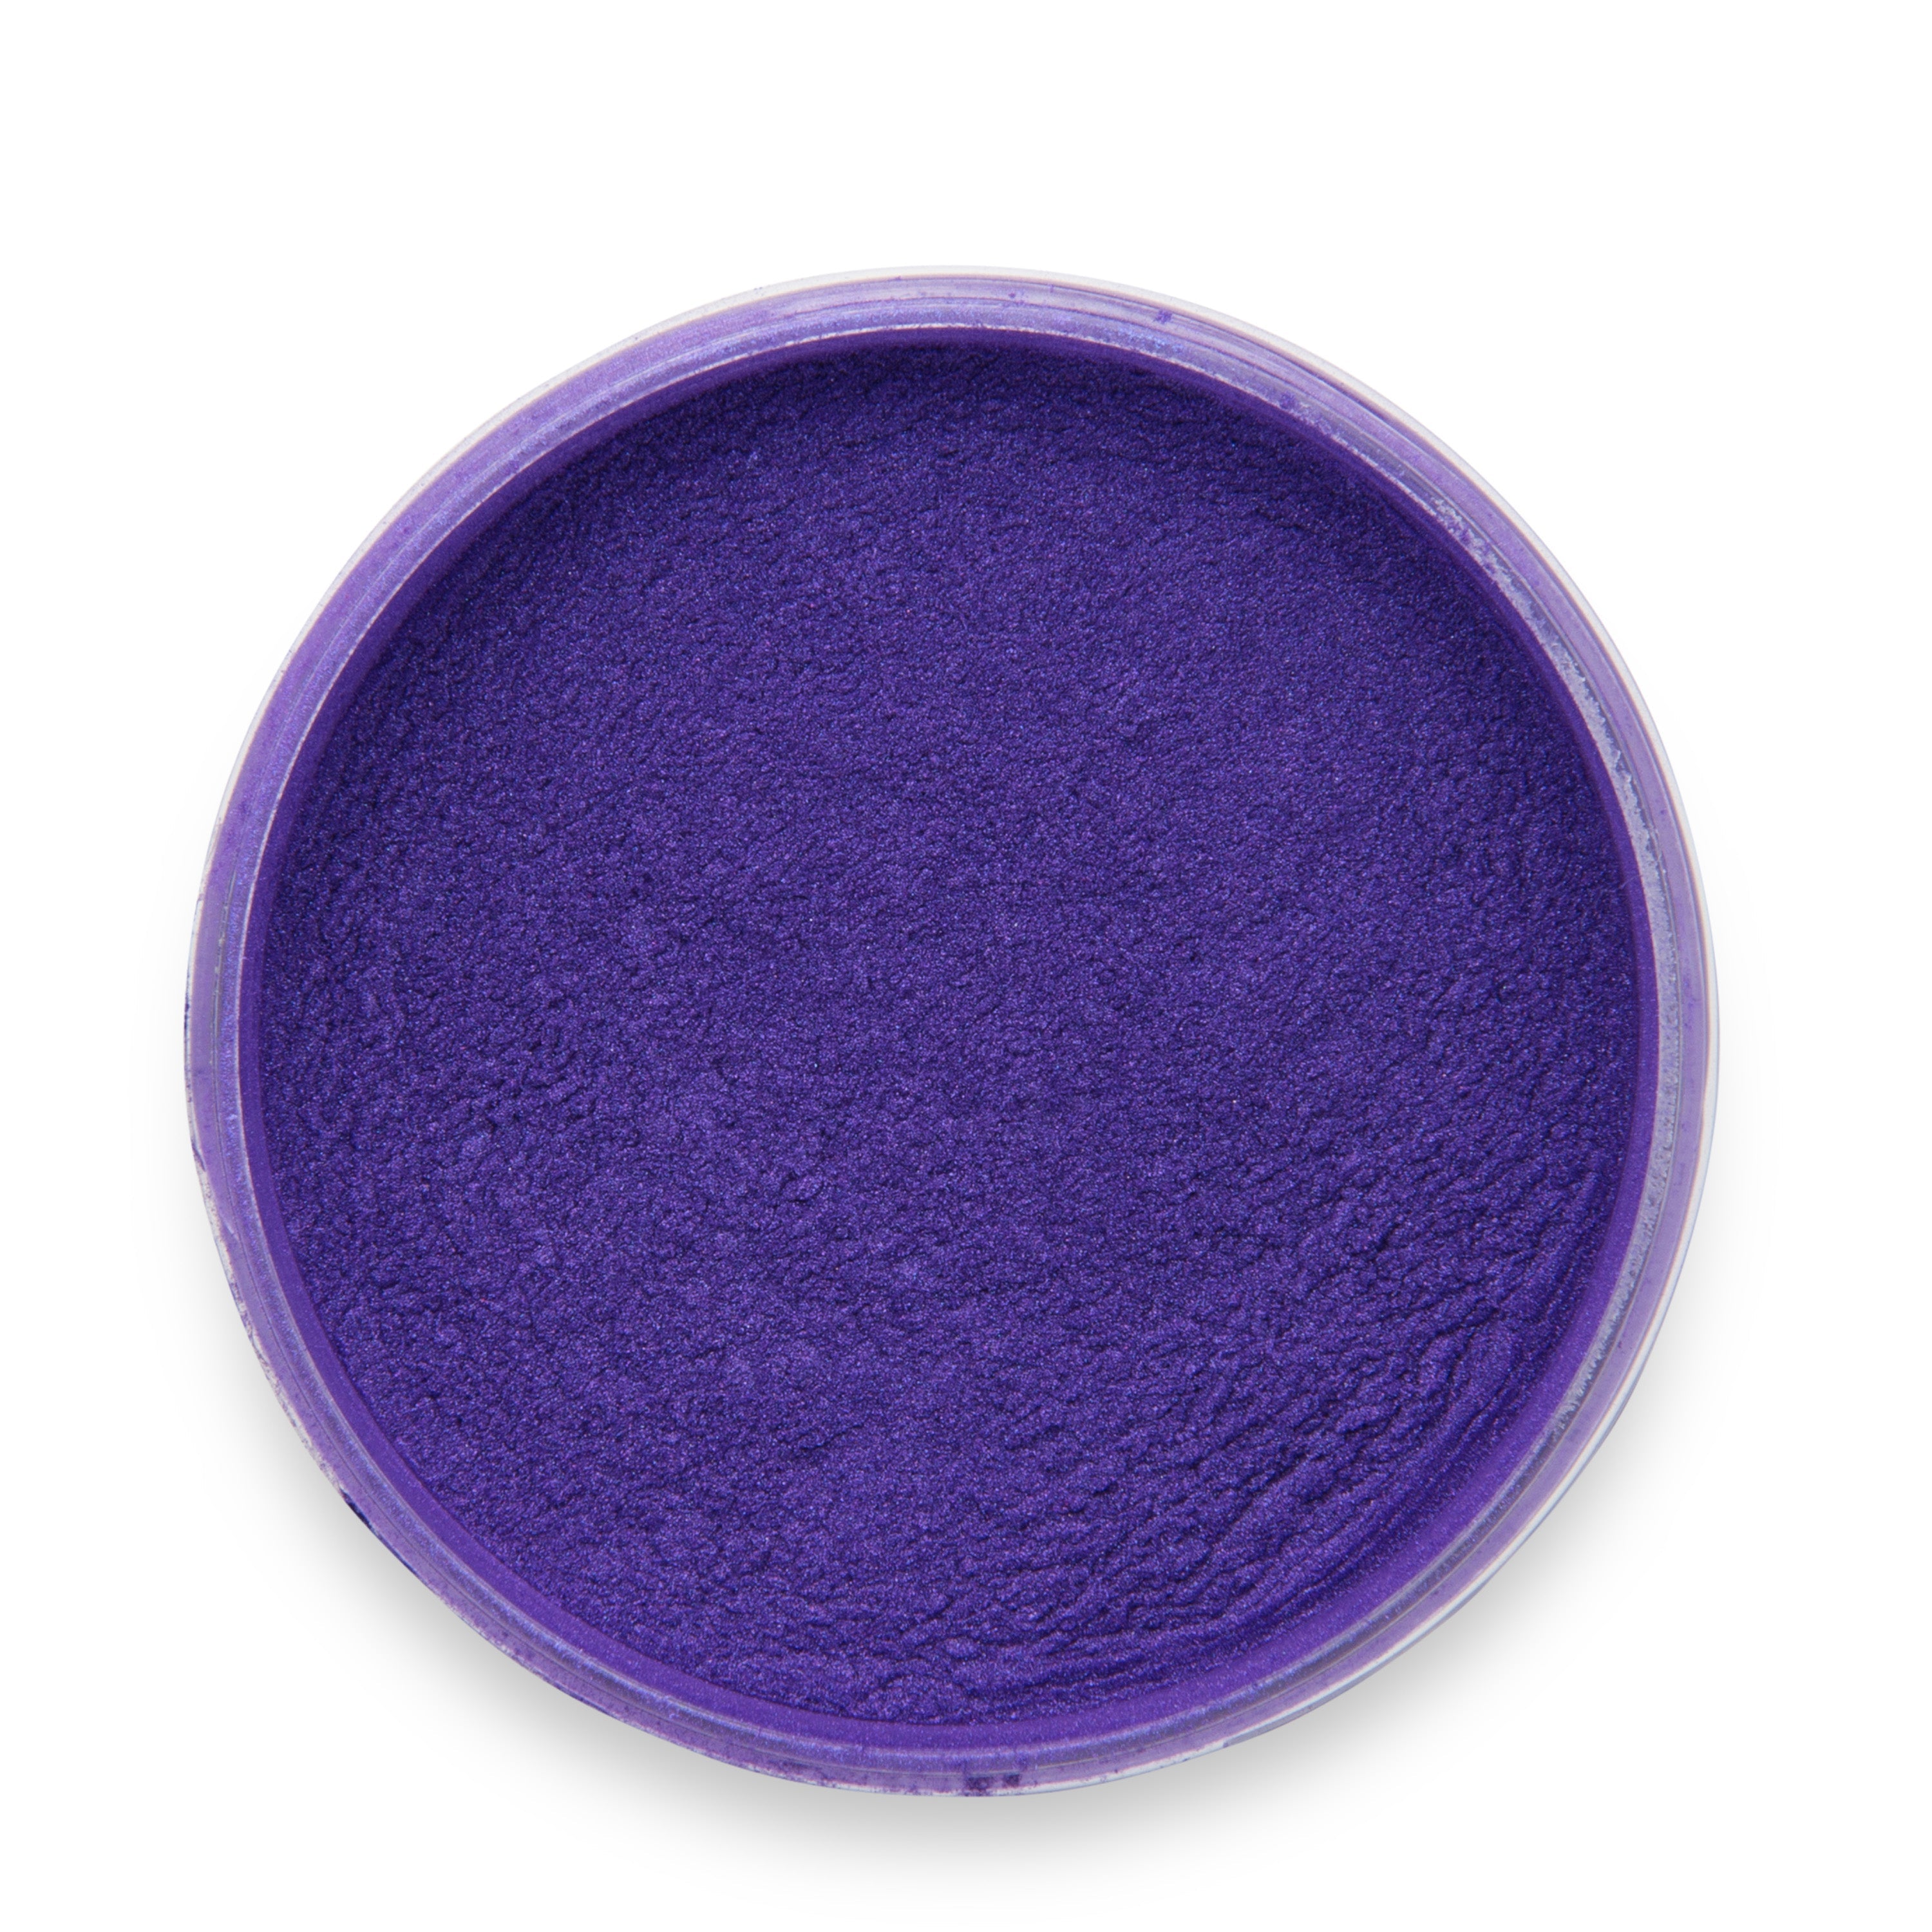 Violet Night Epoxy Powder Pigment